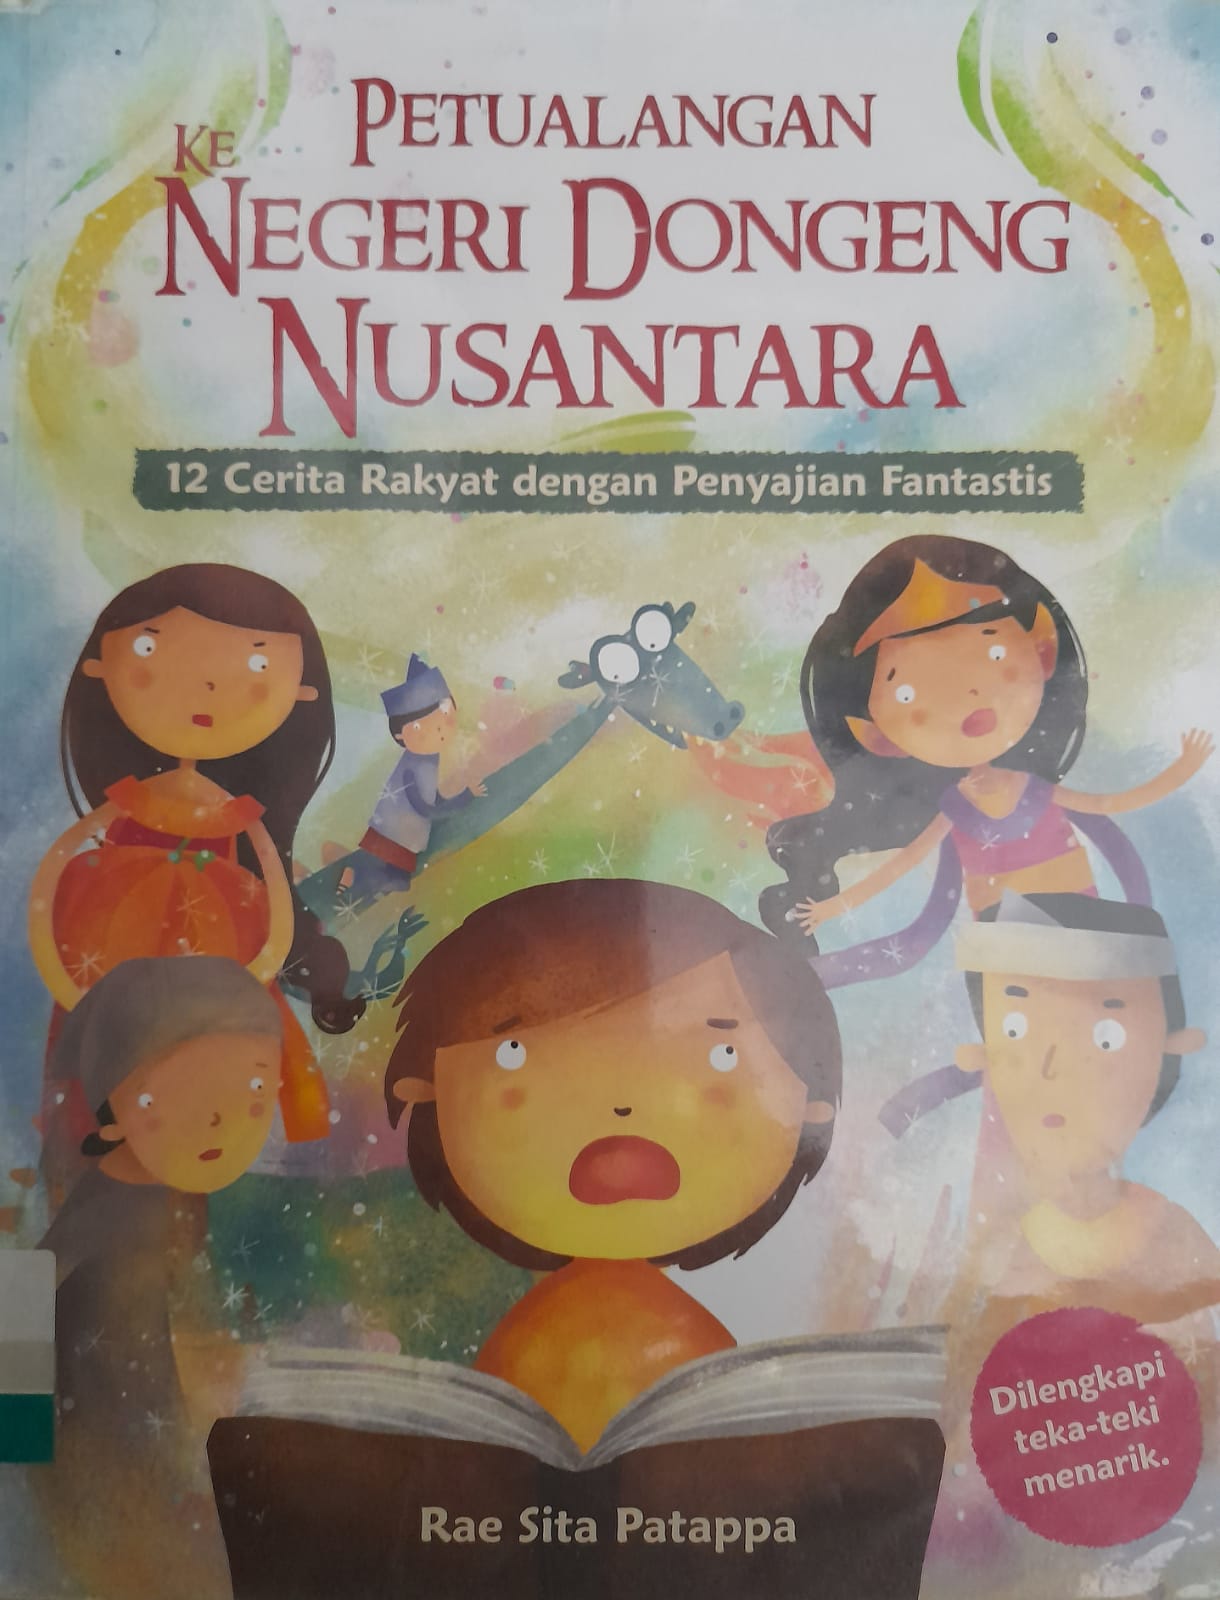 Petualangan ke Negeri Dongeng Nusantara :  12 Cerita Rakyat dengan Penyajian Fantastis